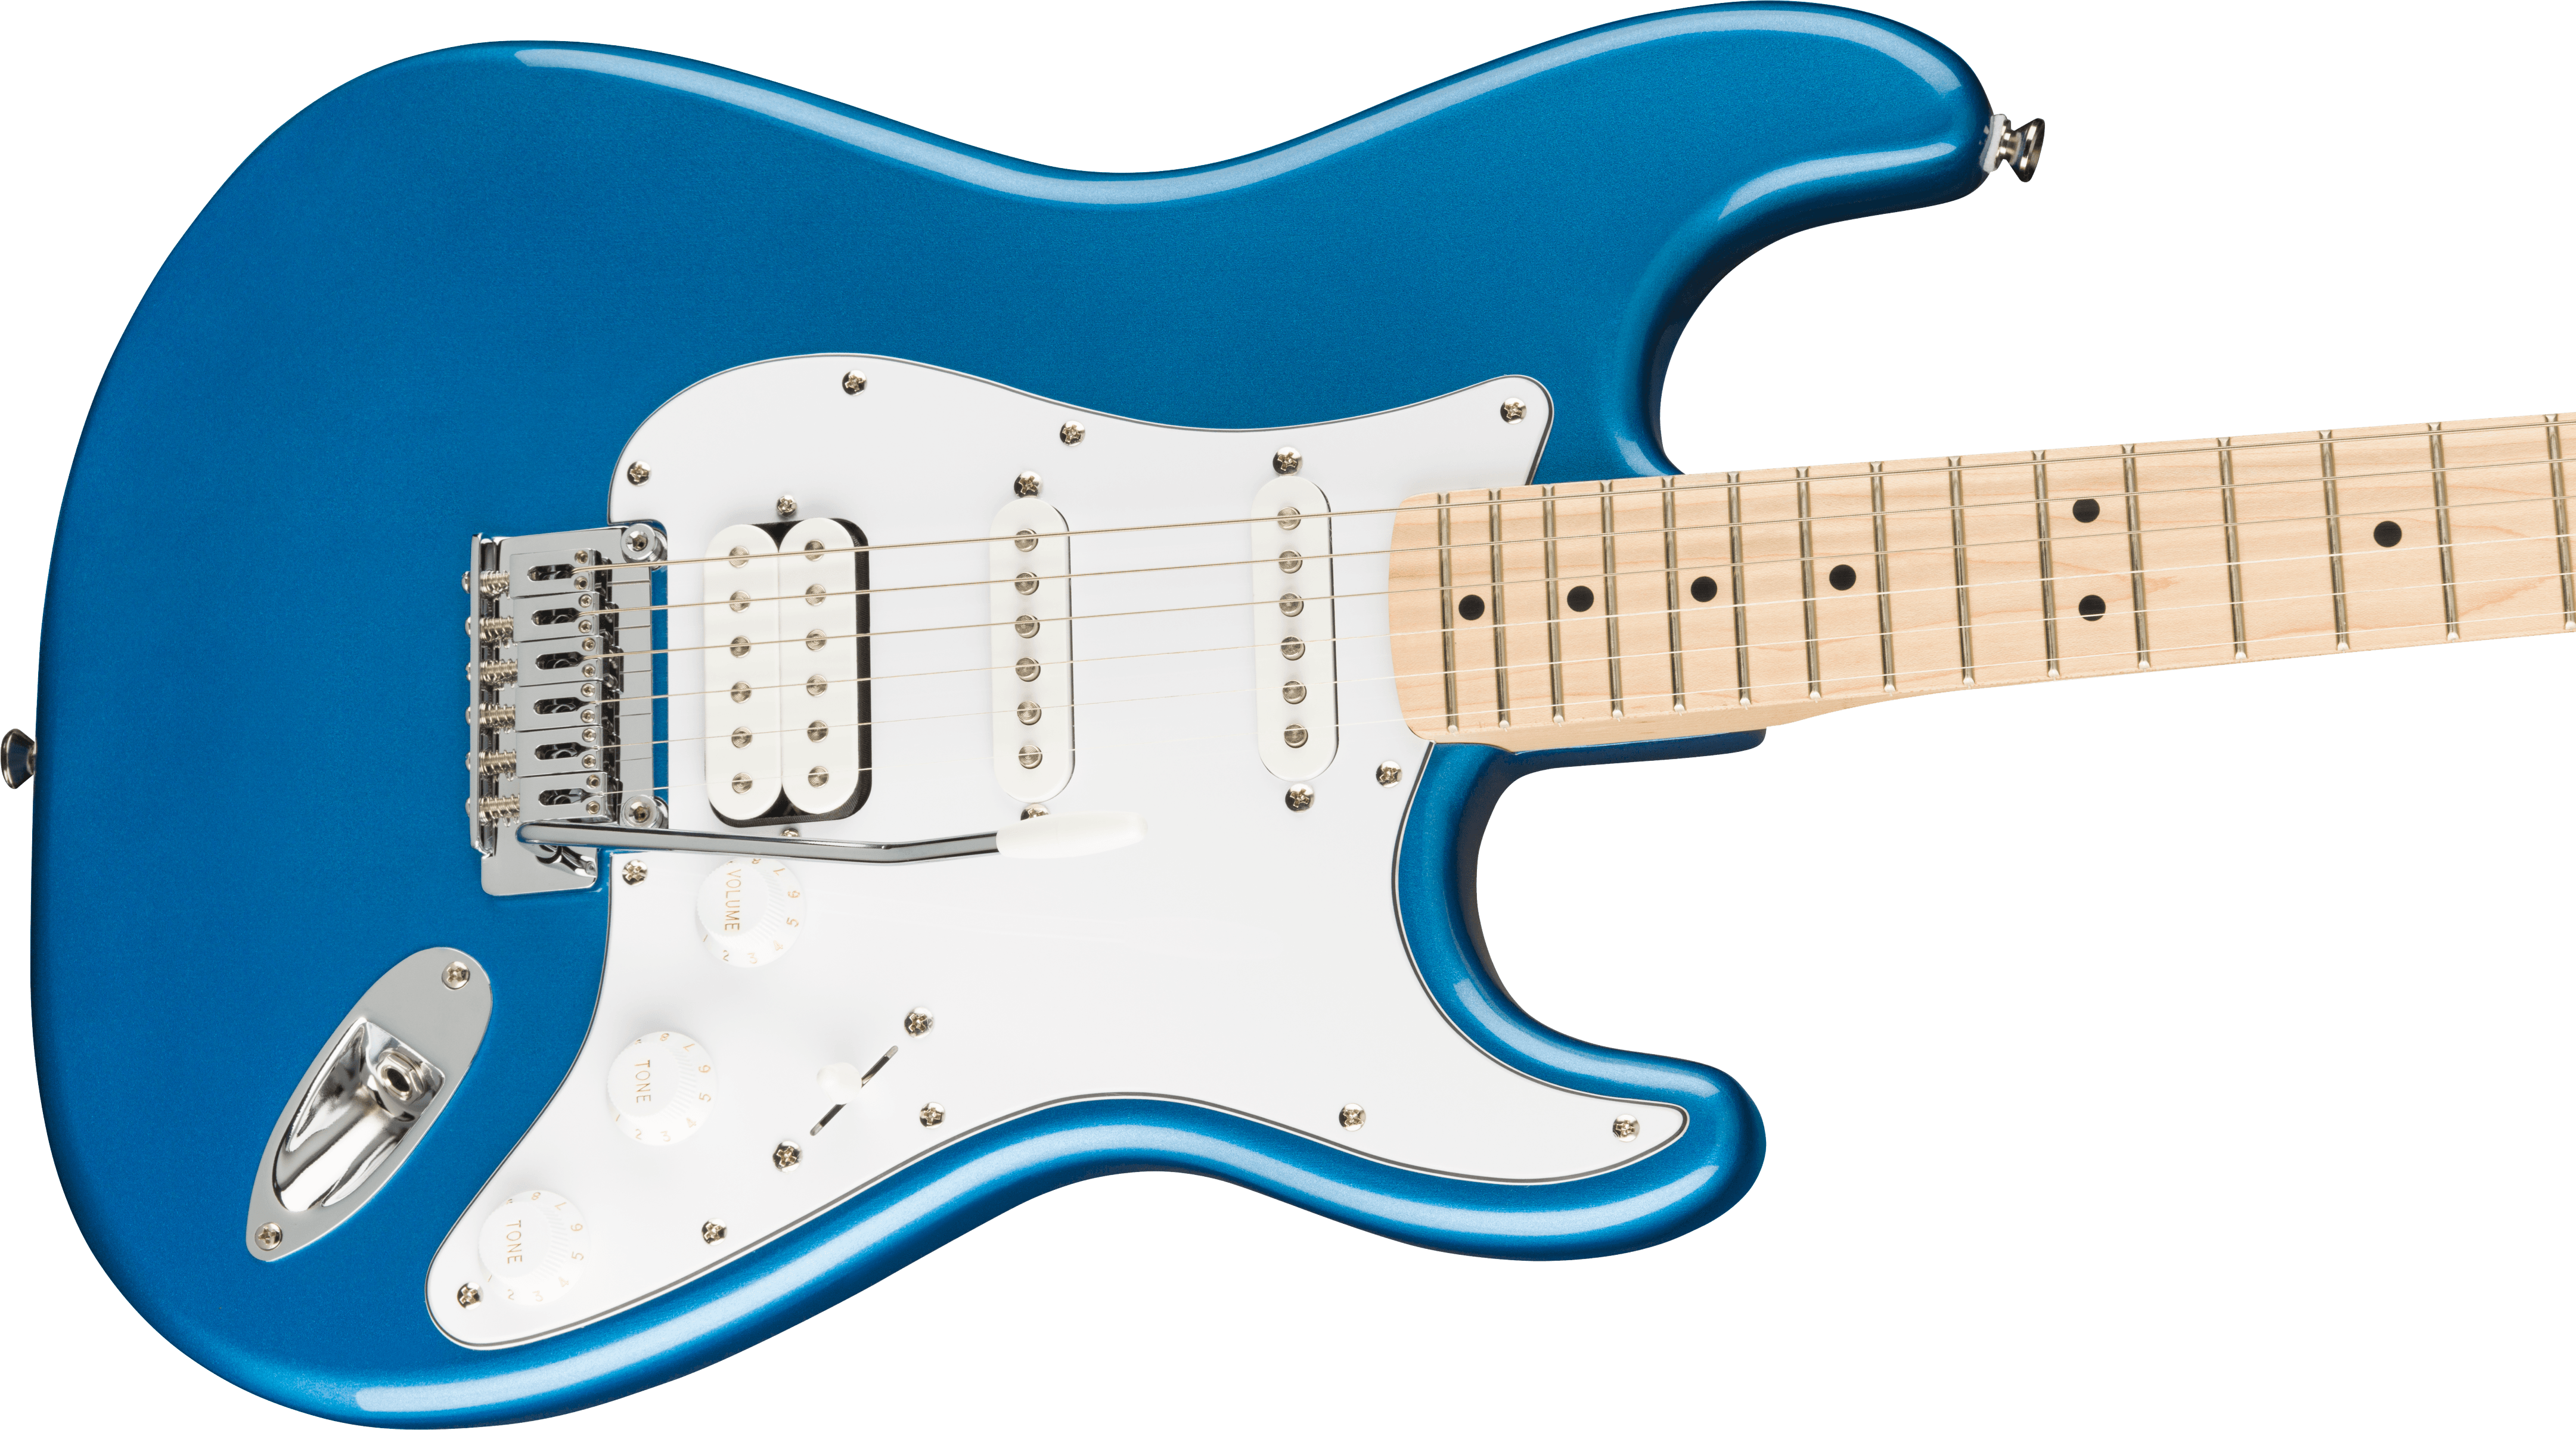 Squier Strat Affinity Hss Pack +fender Frontman 15g 2021 Trem Mn - Lake Placid Blue - Elektrische gitaar set - Variation 3